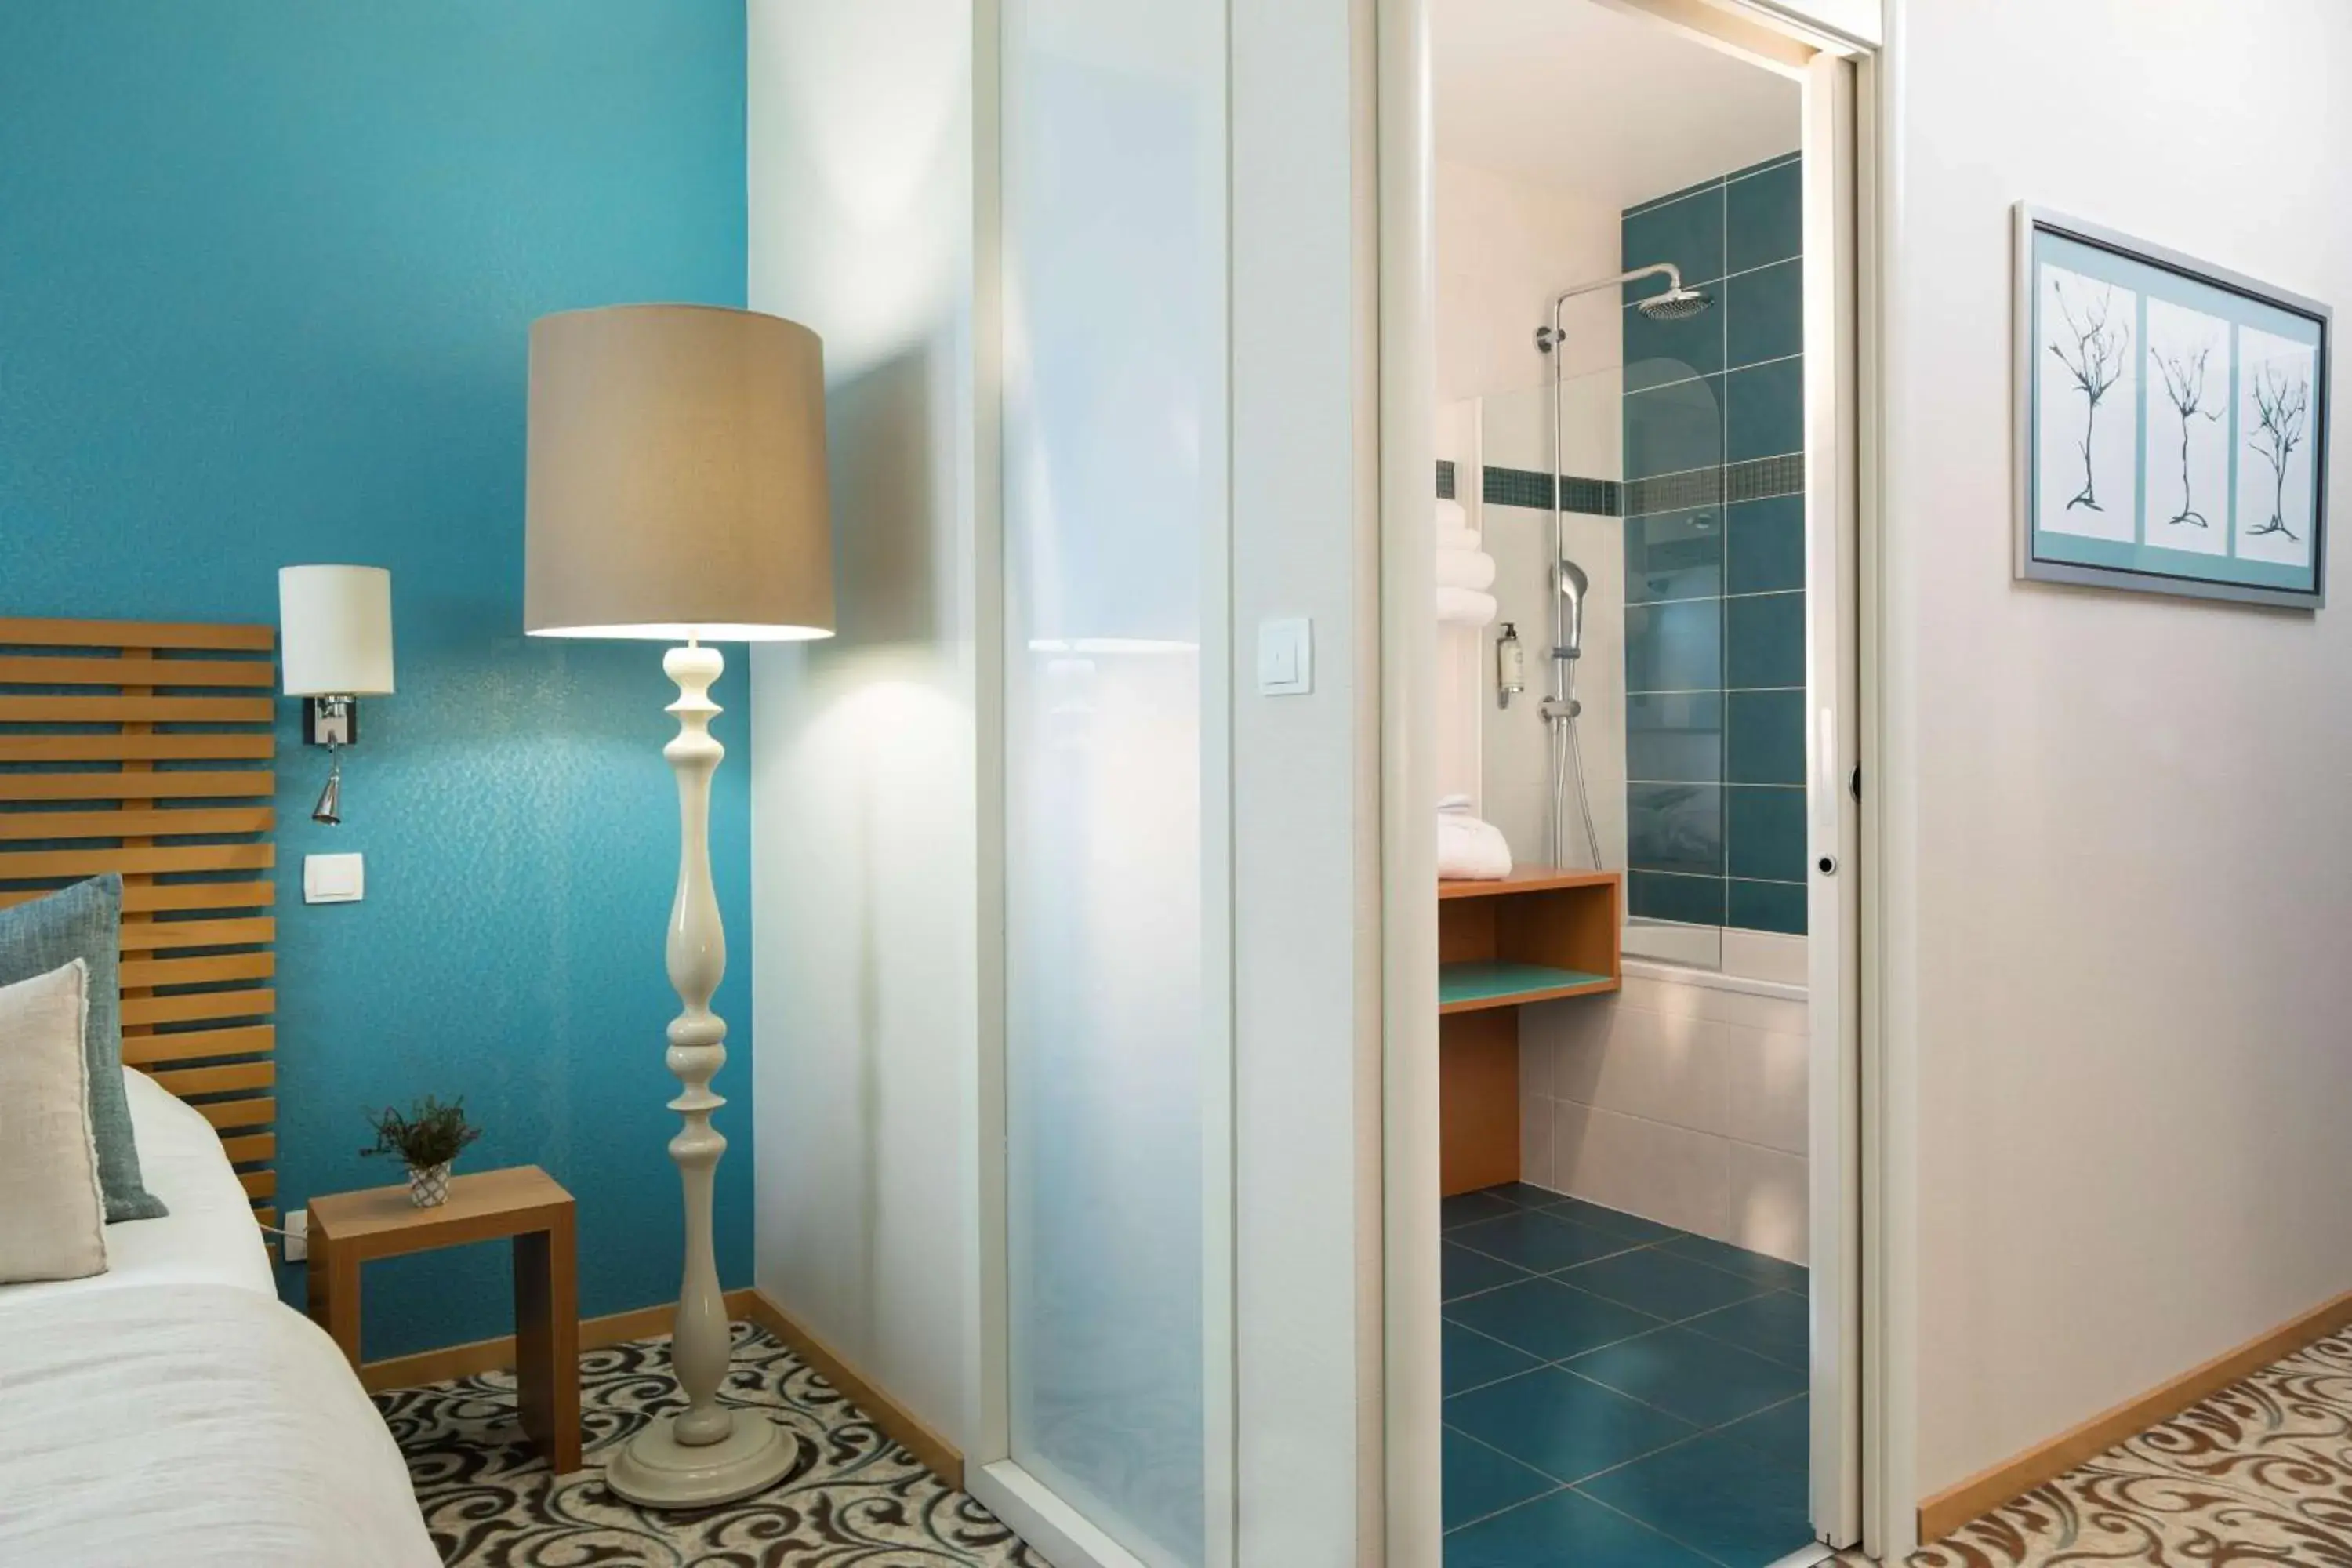 Photo of the whole room, Bathroom in Best Western Plus Hotel De La Regate